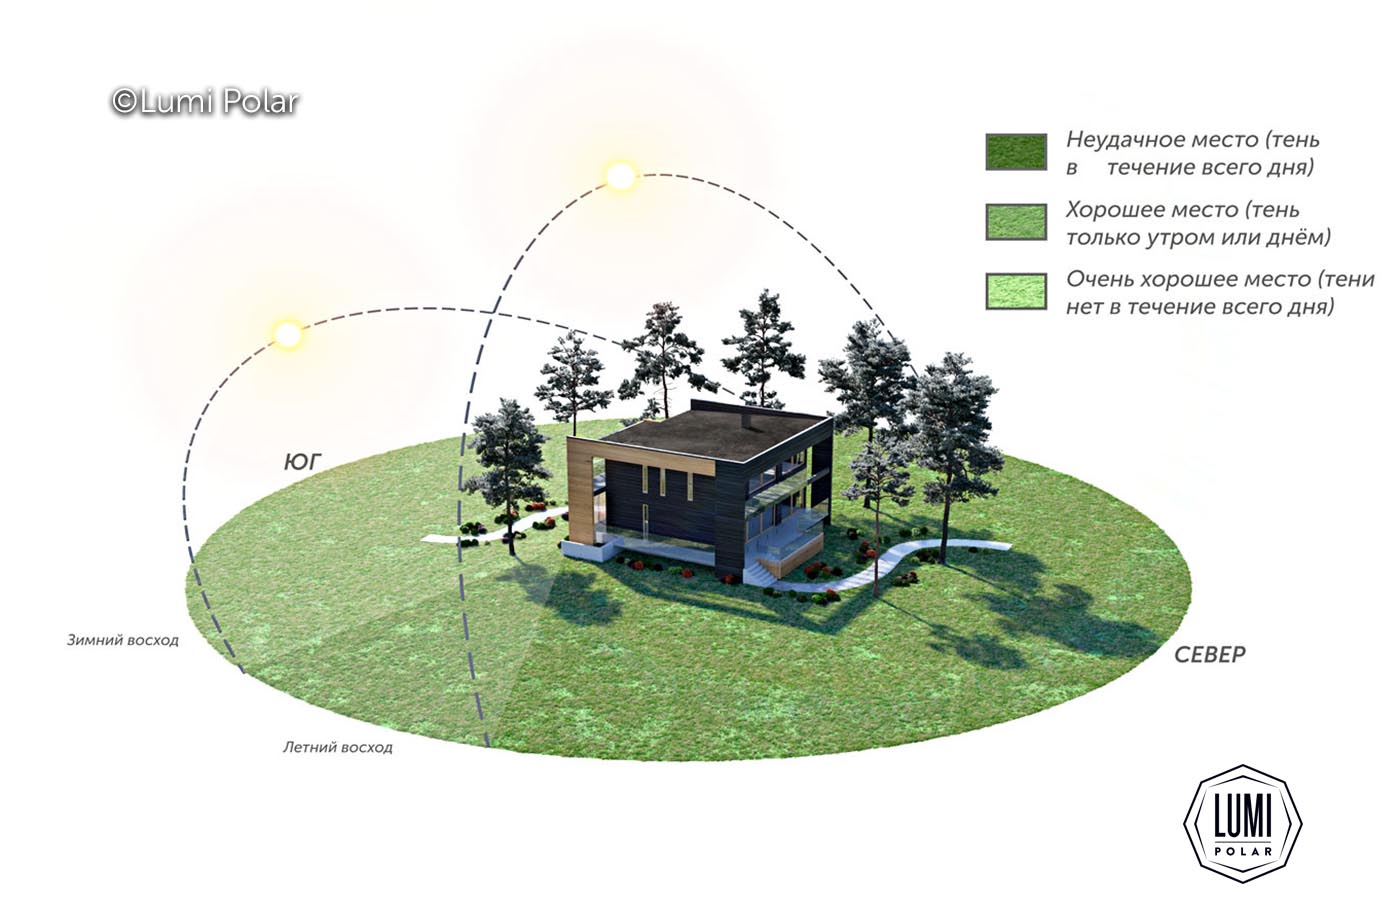 Проектирование элементов дома на земельном участке с учетом движения солнца